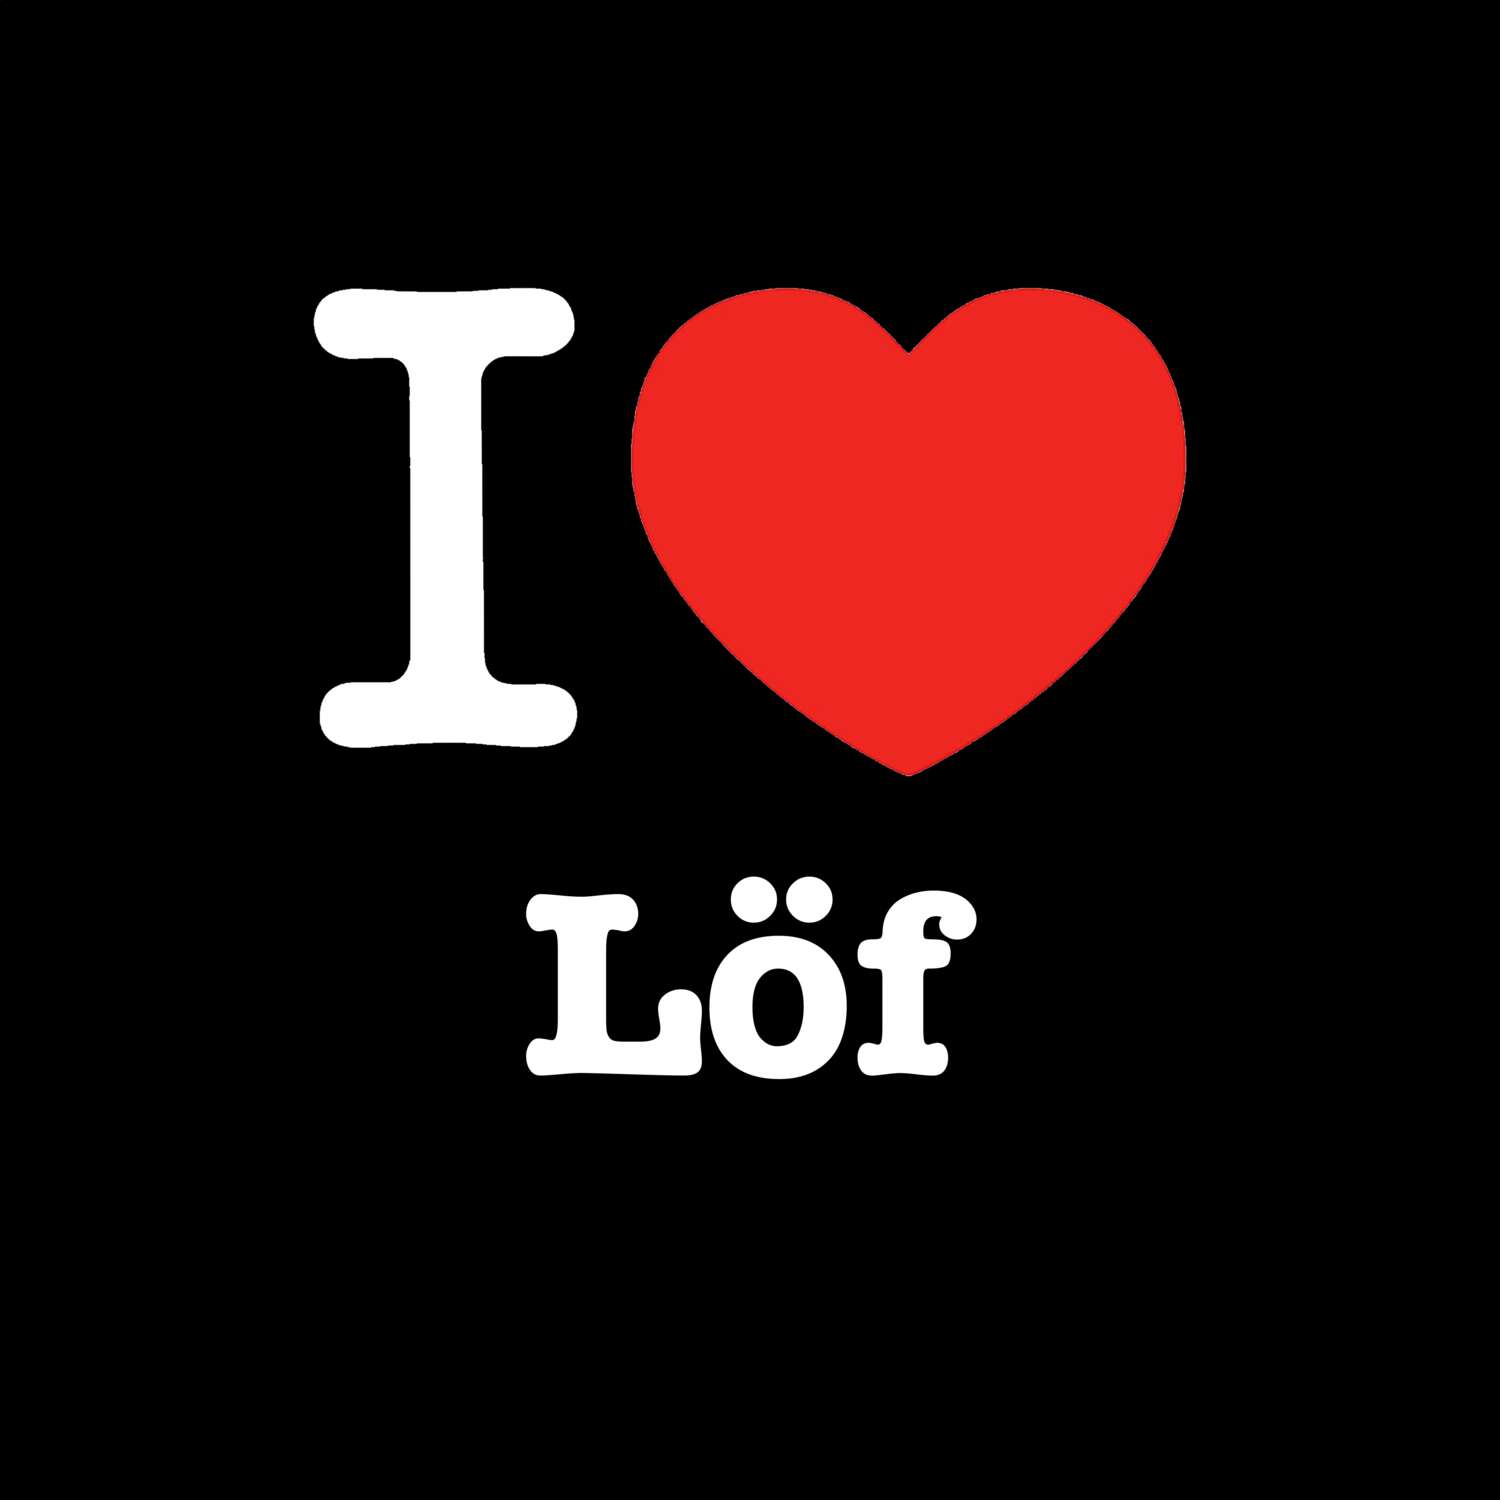 Löf T-Shirt »I love«